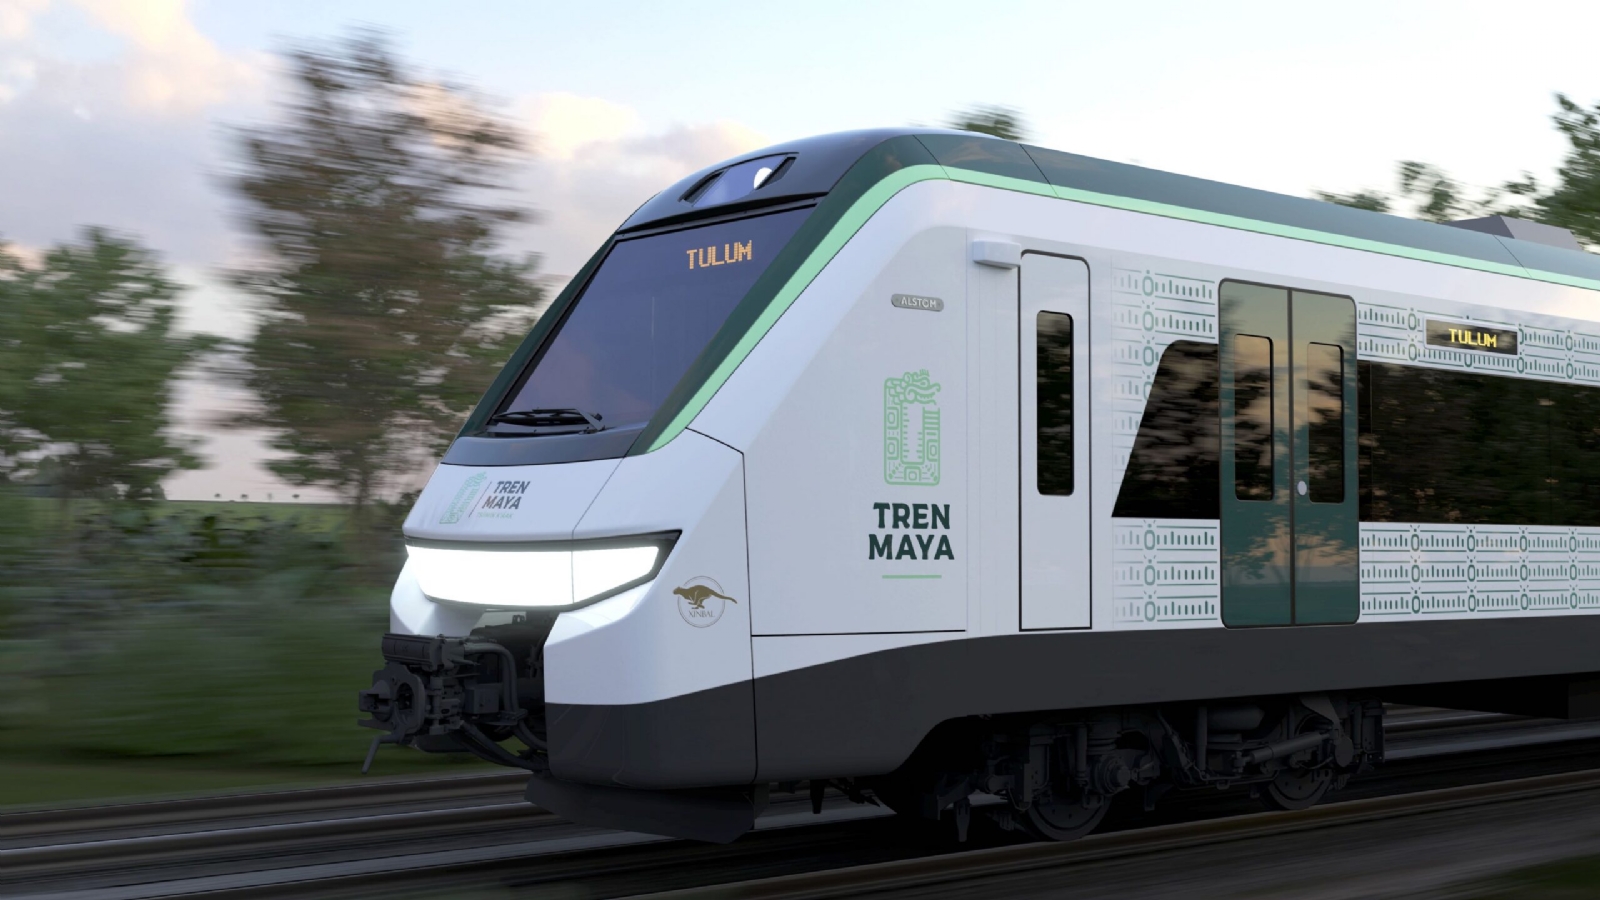 El Tren Maya conectará a los estados de Tabasco, Chiapas, Campeche, Yucatán y Quintana Roo, a lo largo de siete tramos